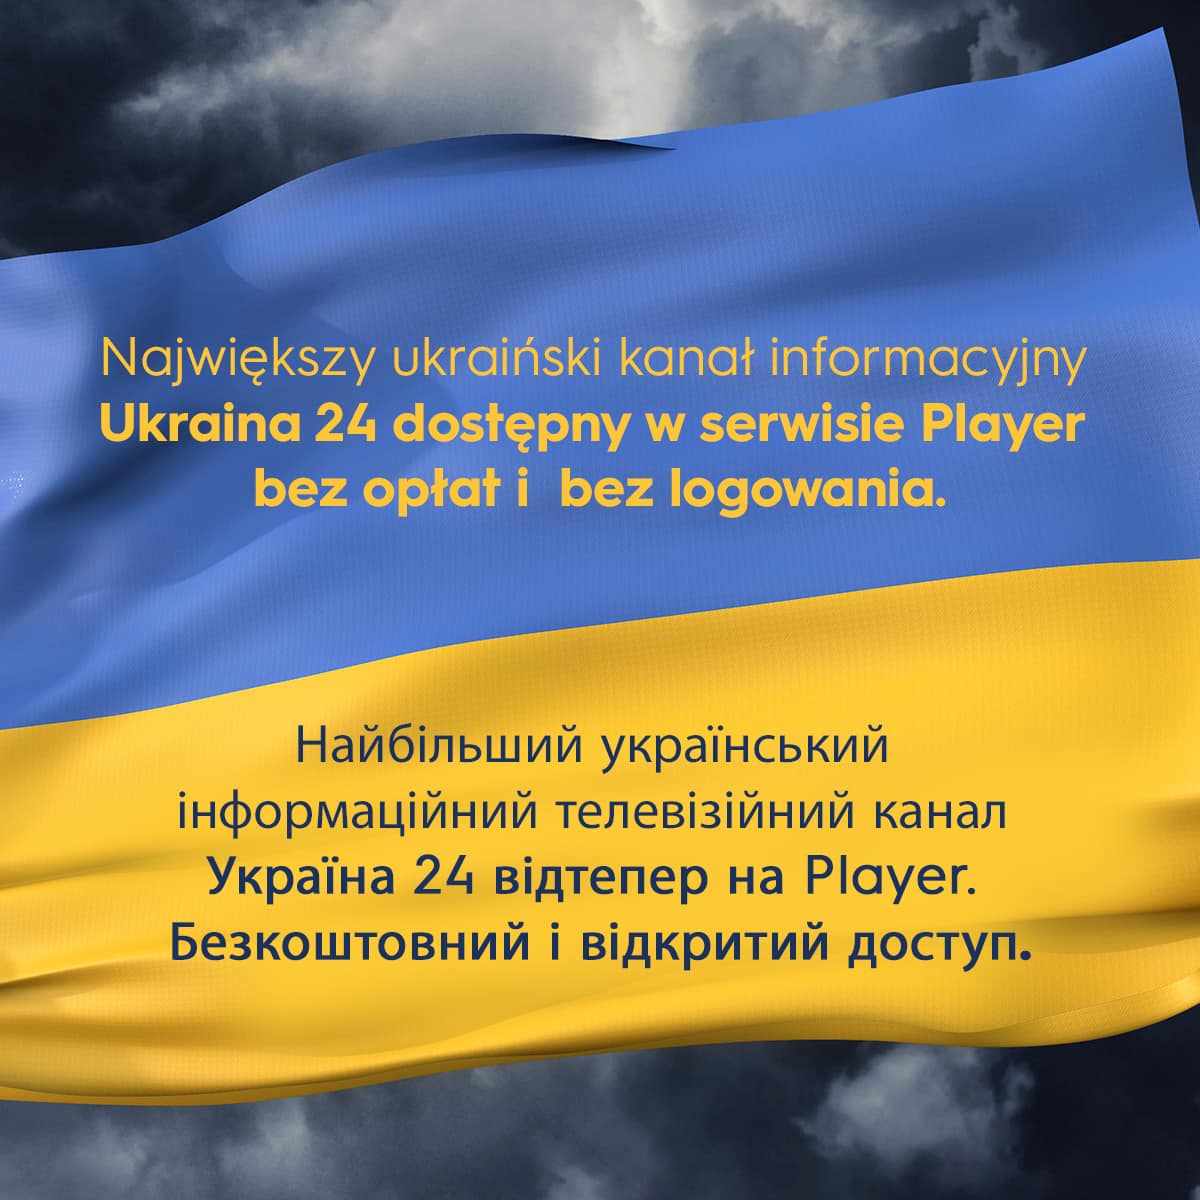 Kanał Ukraina 24 dostępny za darmo i bez logowania w Player!